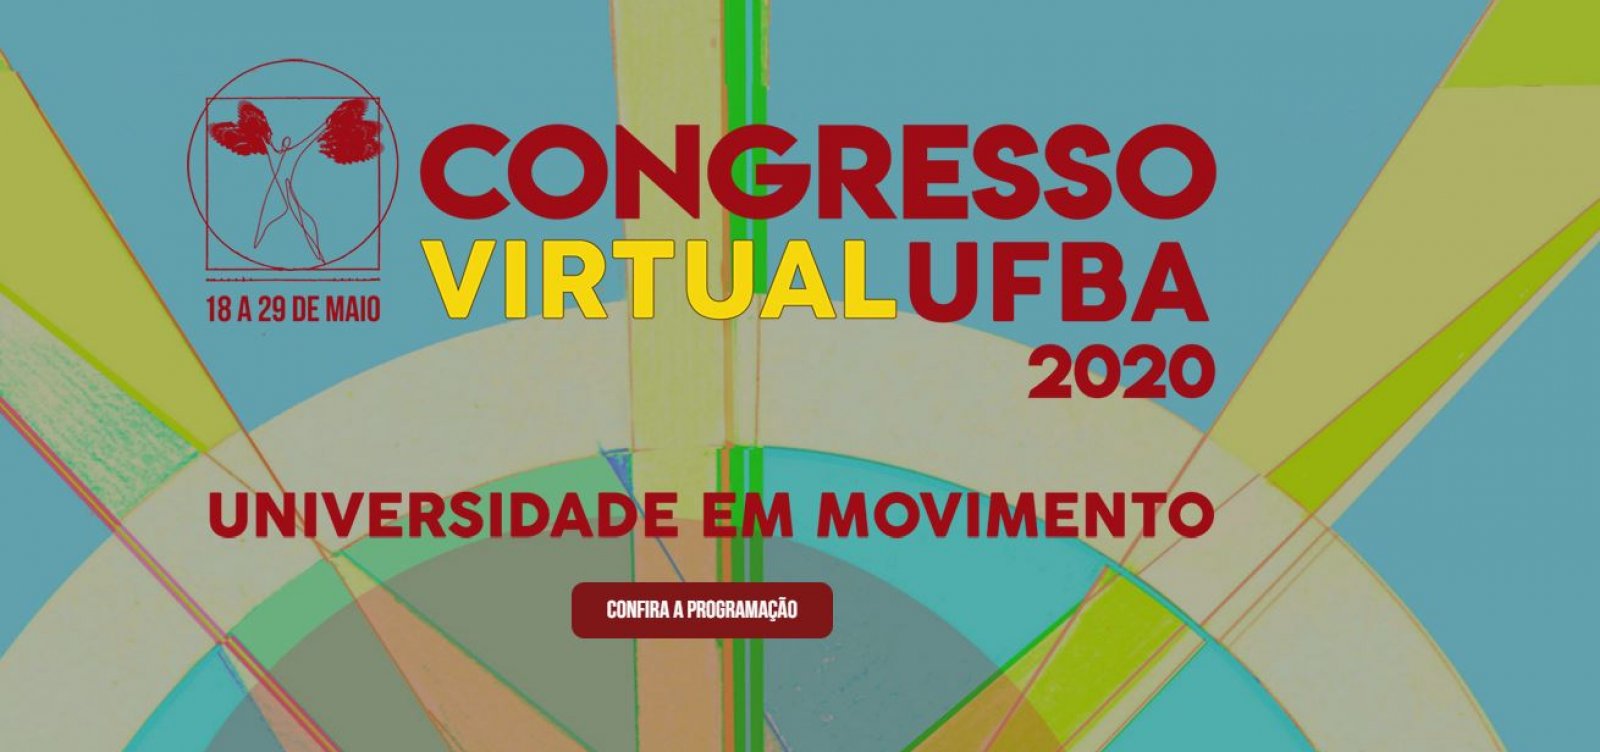 Congresso da Ufba tem hoje seu último dia; confira programação 